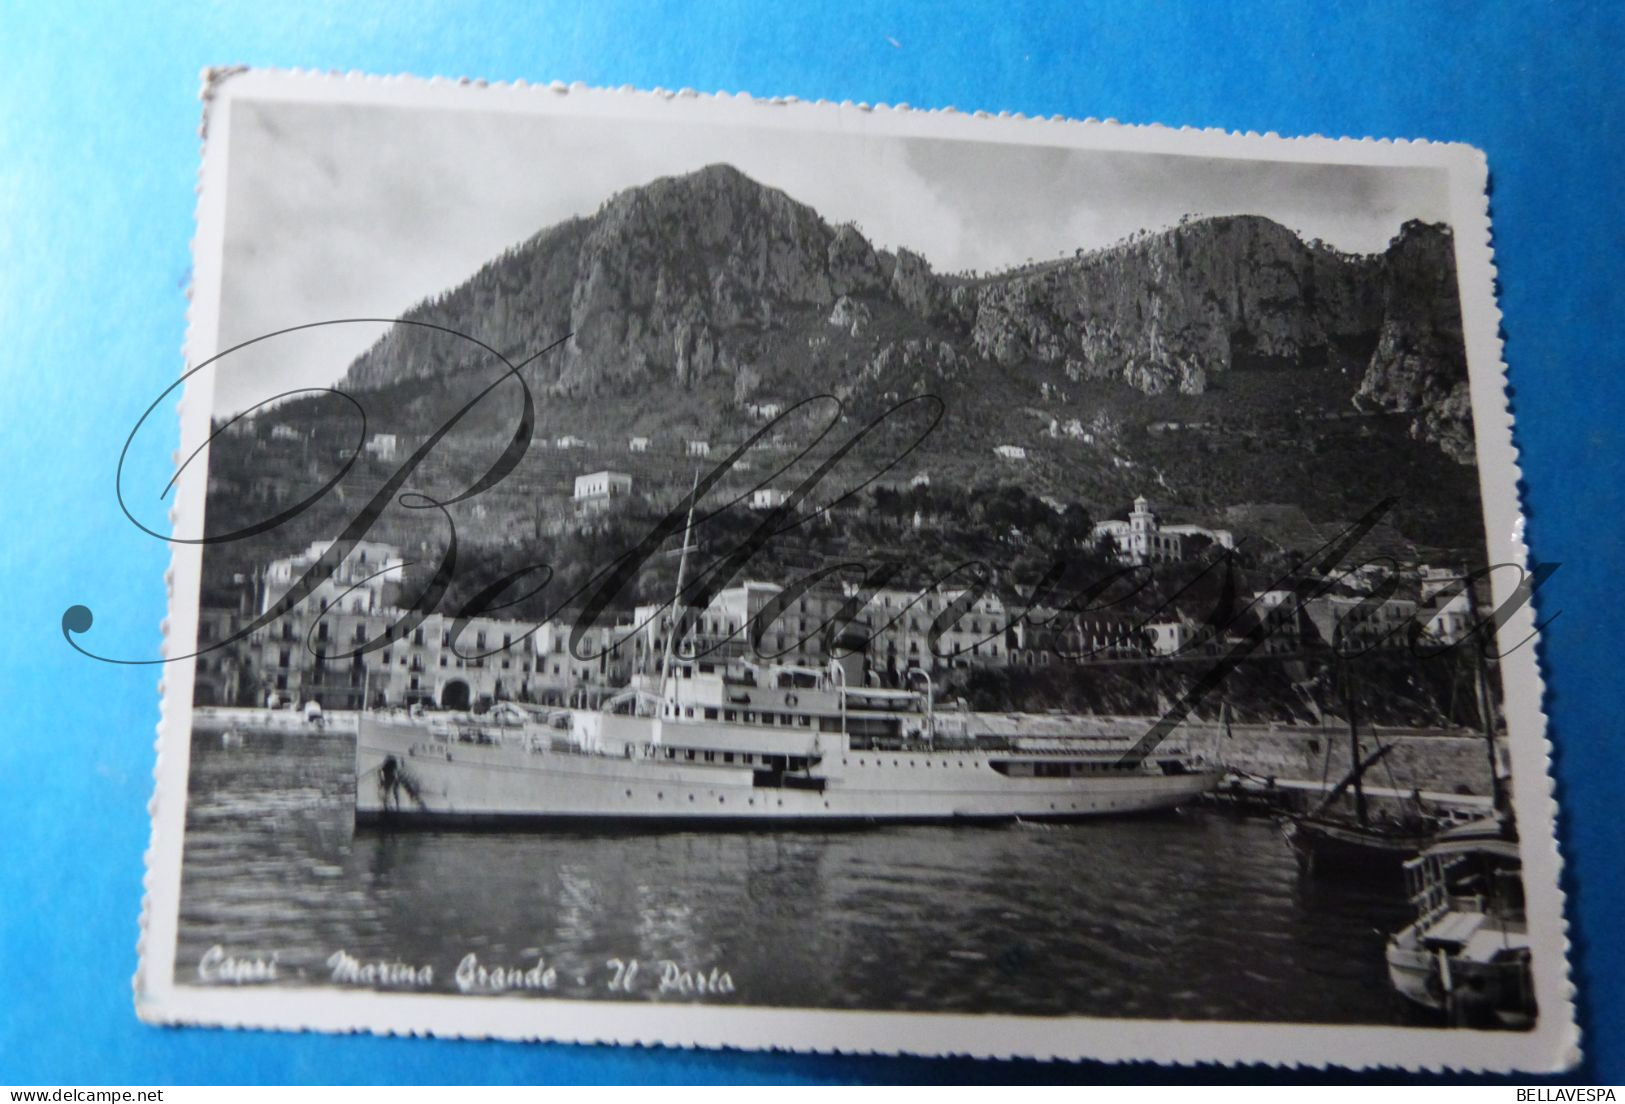 Capri Martina Grande Il Porto Bateau -Barca  "CAPRI" 1950 - Steamers